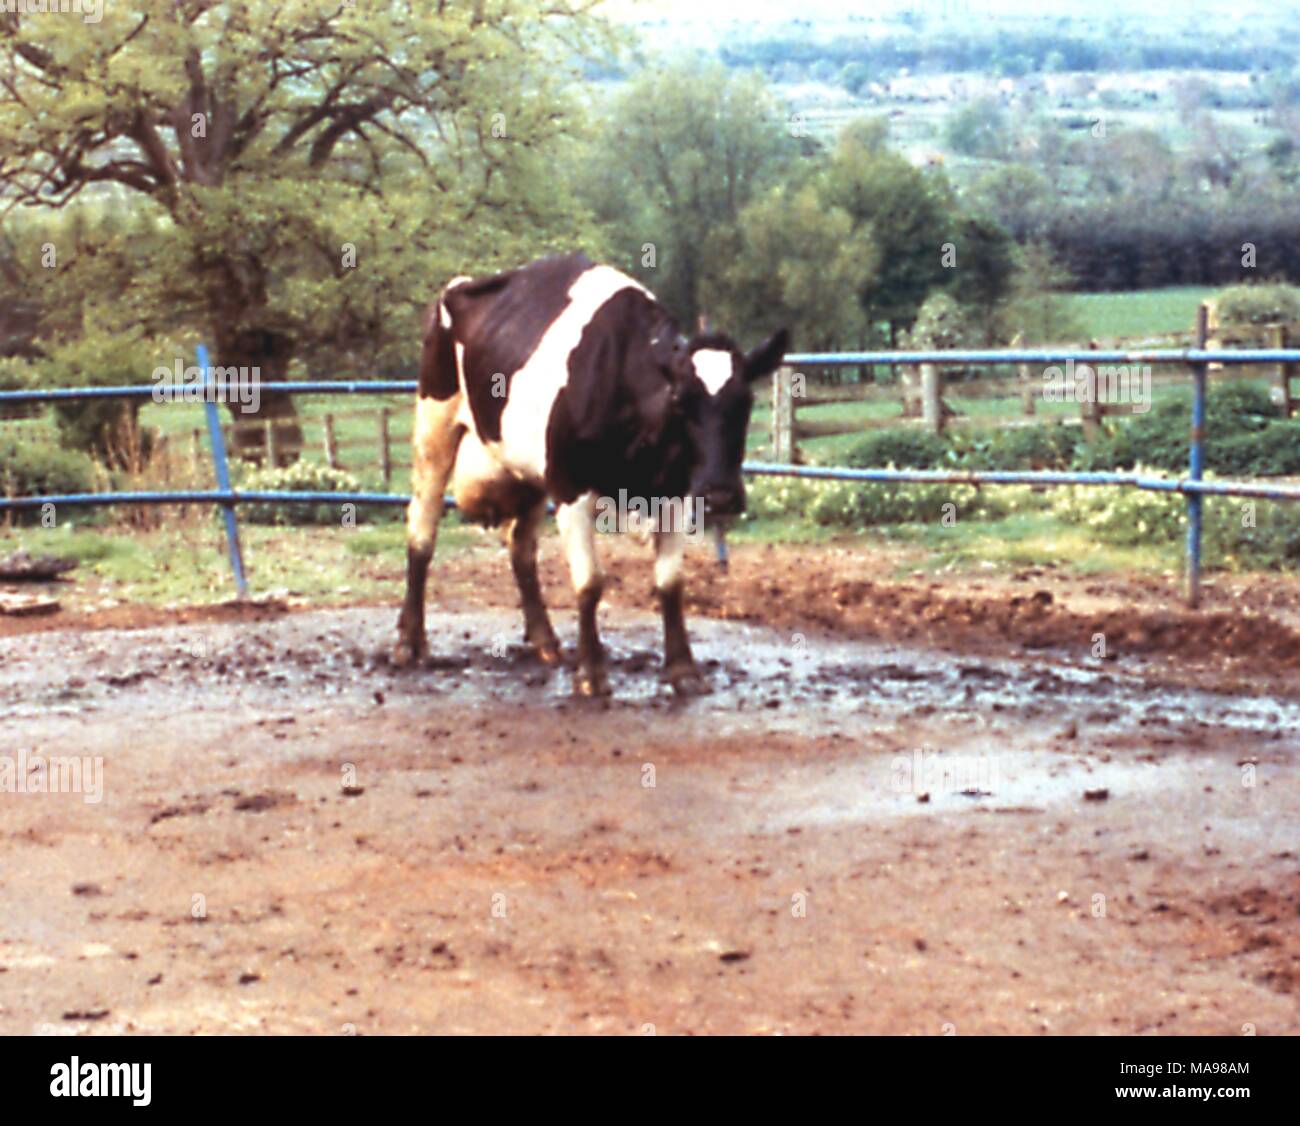 Cow standing dans la zone restreinte, touchés par l'encéphalopathie spongiforme bovine (ESB), communément appelée maladie de la vache folle, 2003. Image courtoisie U.S. Dept. of Agriculture - Animal and Plant Health Inspection Service (APHIS). () Banque D'Images